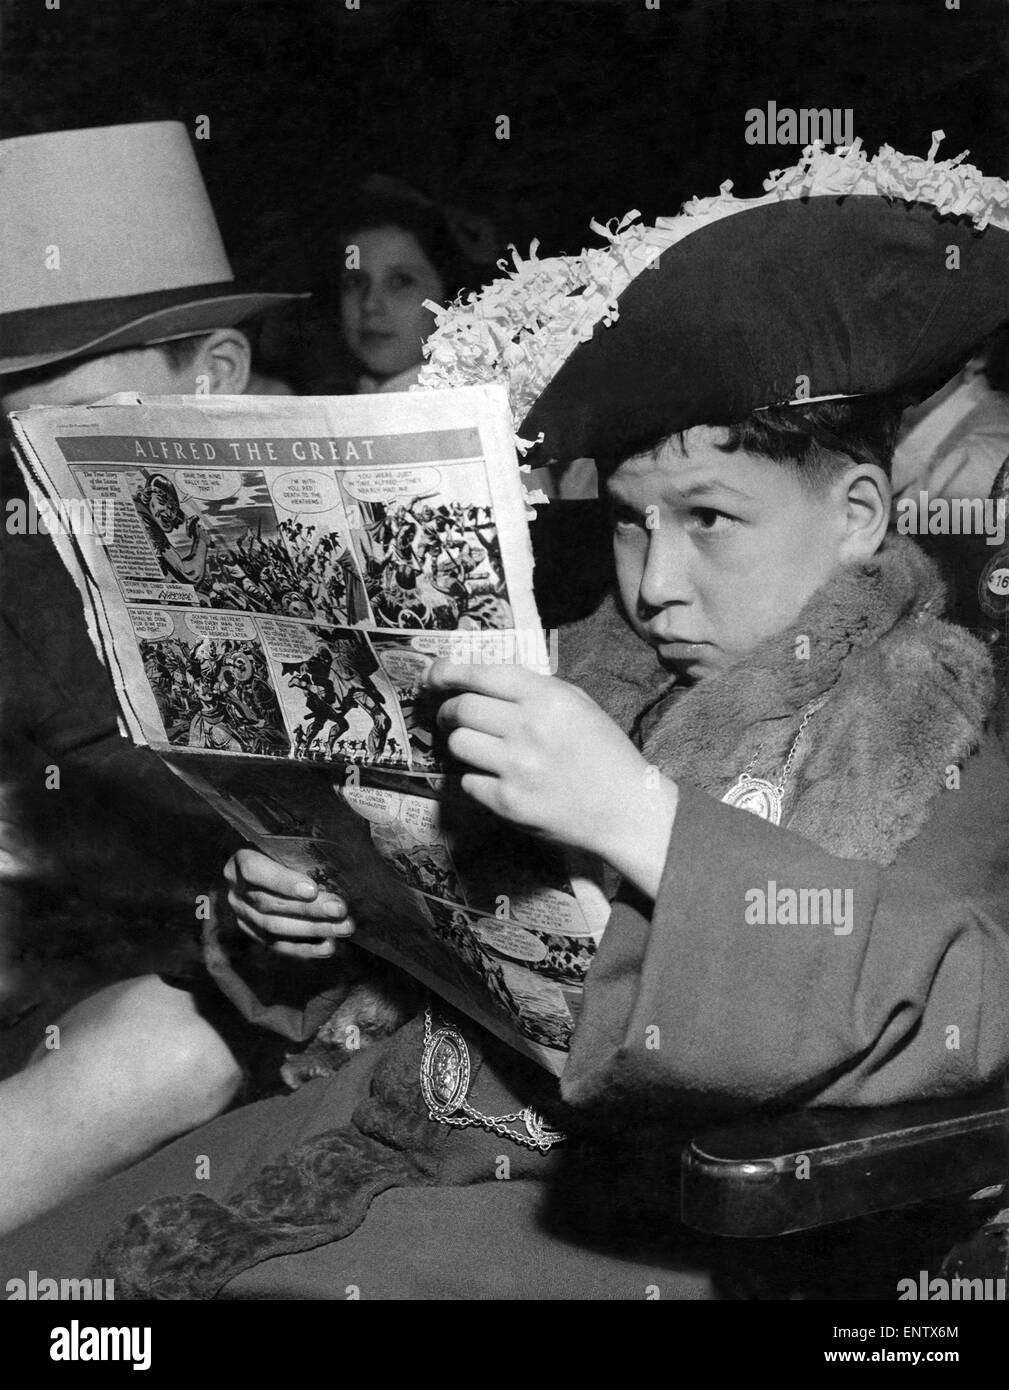 Young John Hoffman von Thornhill primären ist der Bürgermeister Hameln aber He Stills liest seinem Comic über Alfred der große Erwartung für die Proben. 24. März 1954. Stockfoto